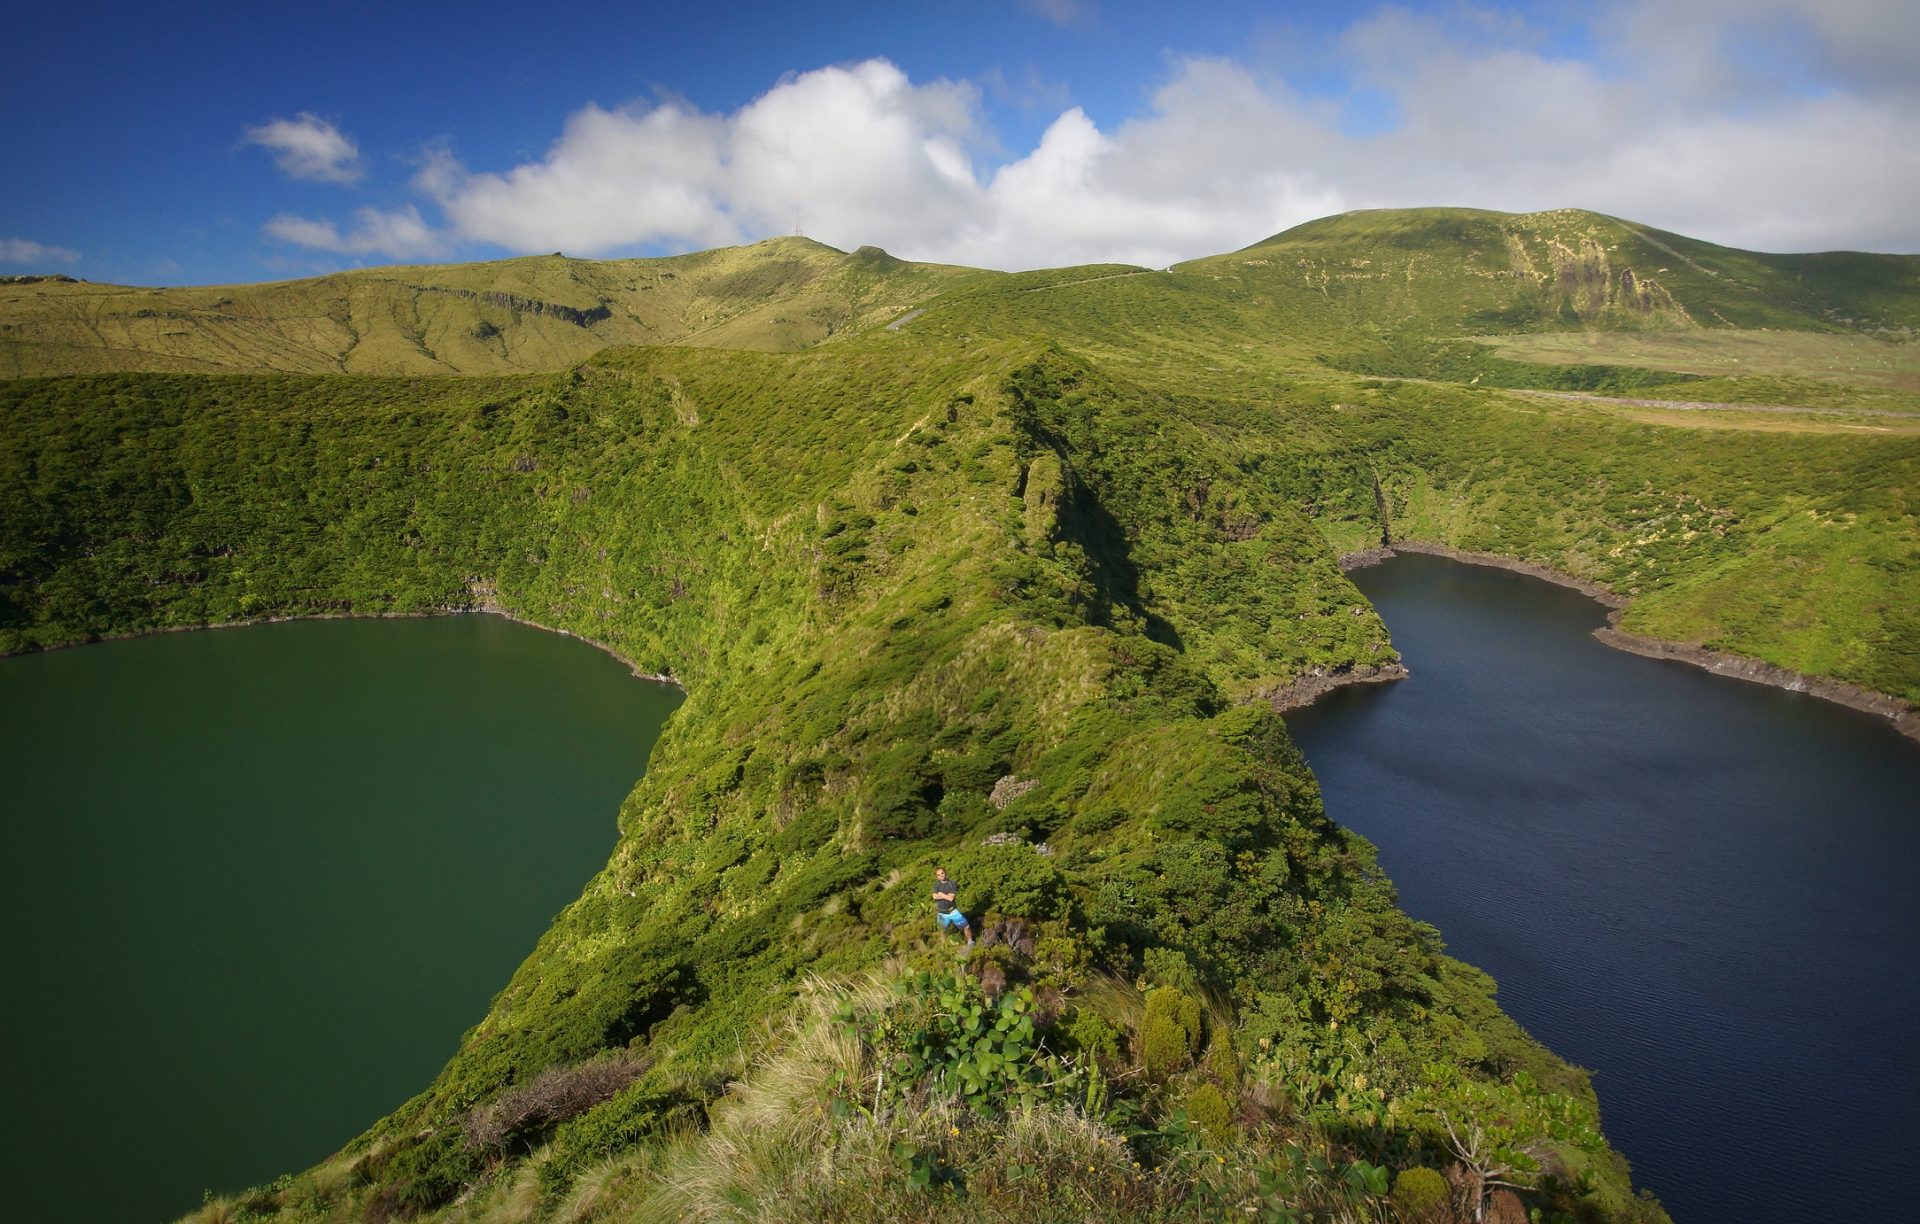 Detetada presença humana nos Açores 700 anos antes da chegada dos portugueses